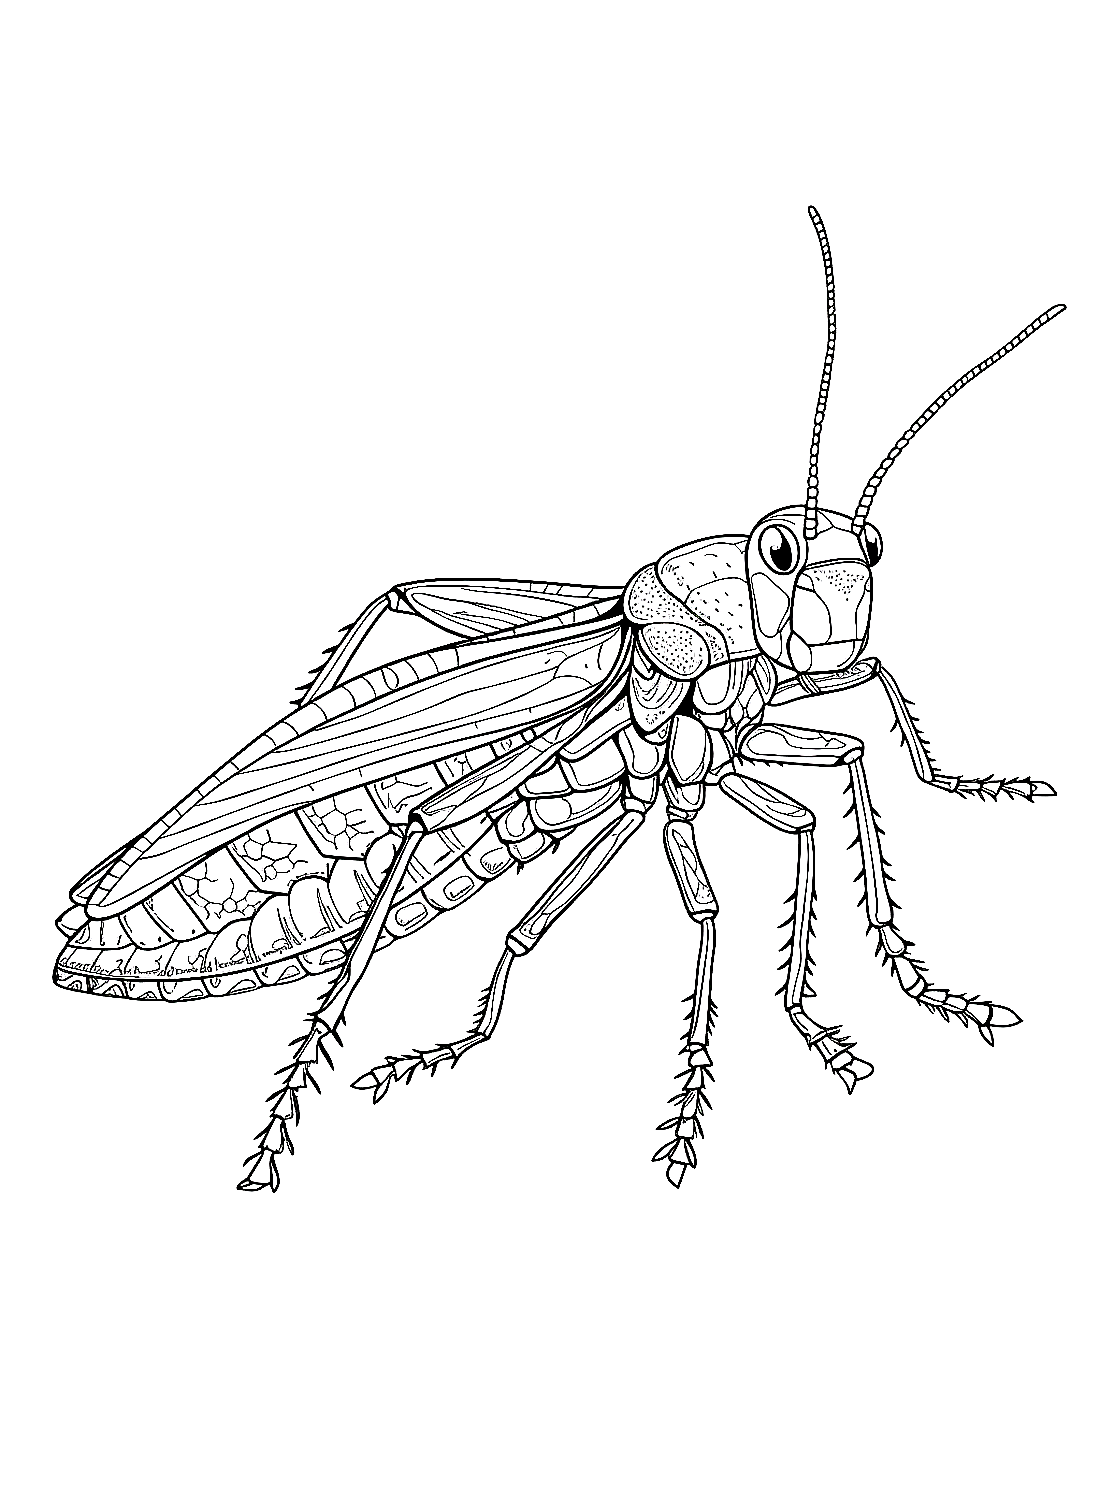 La linda langosta de Locust